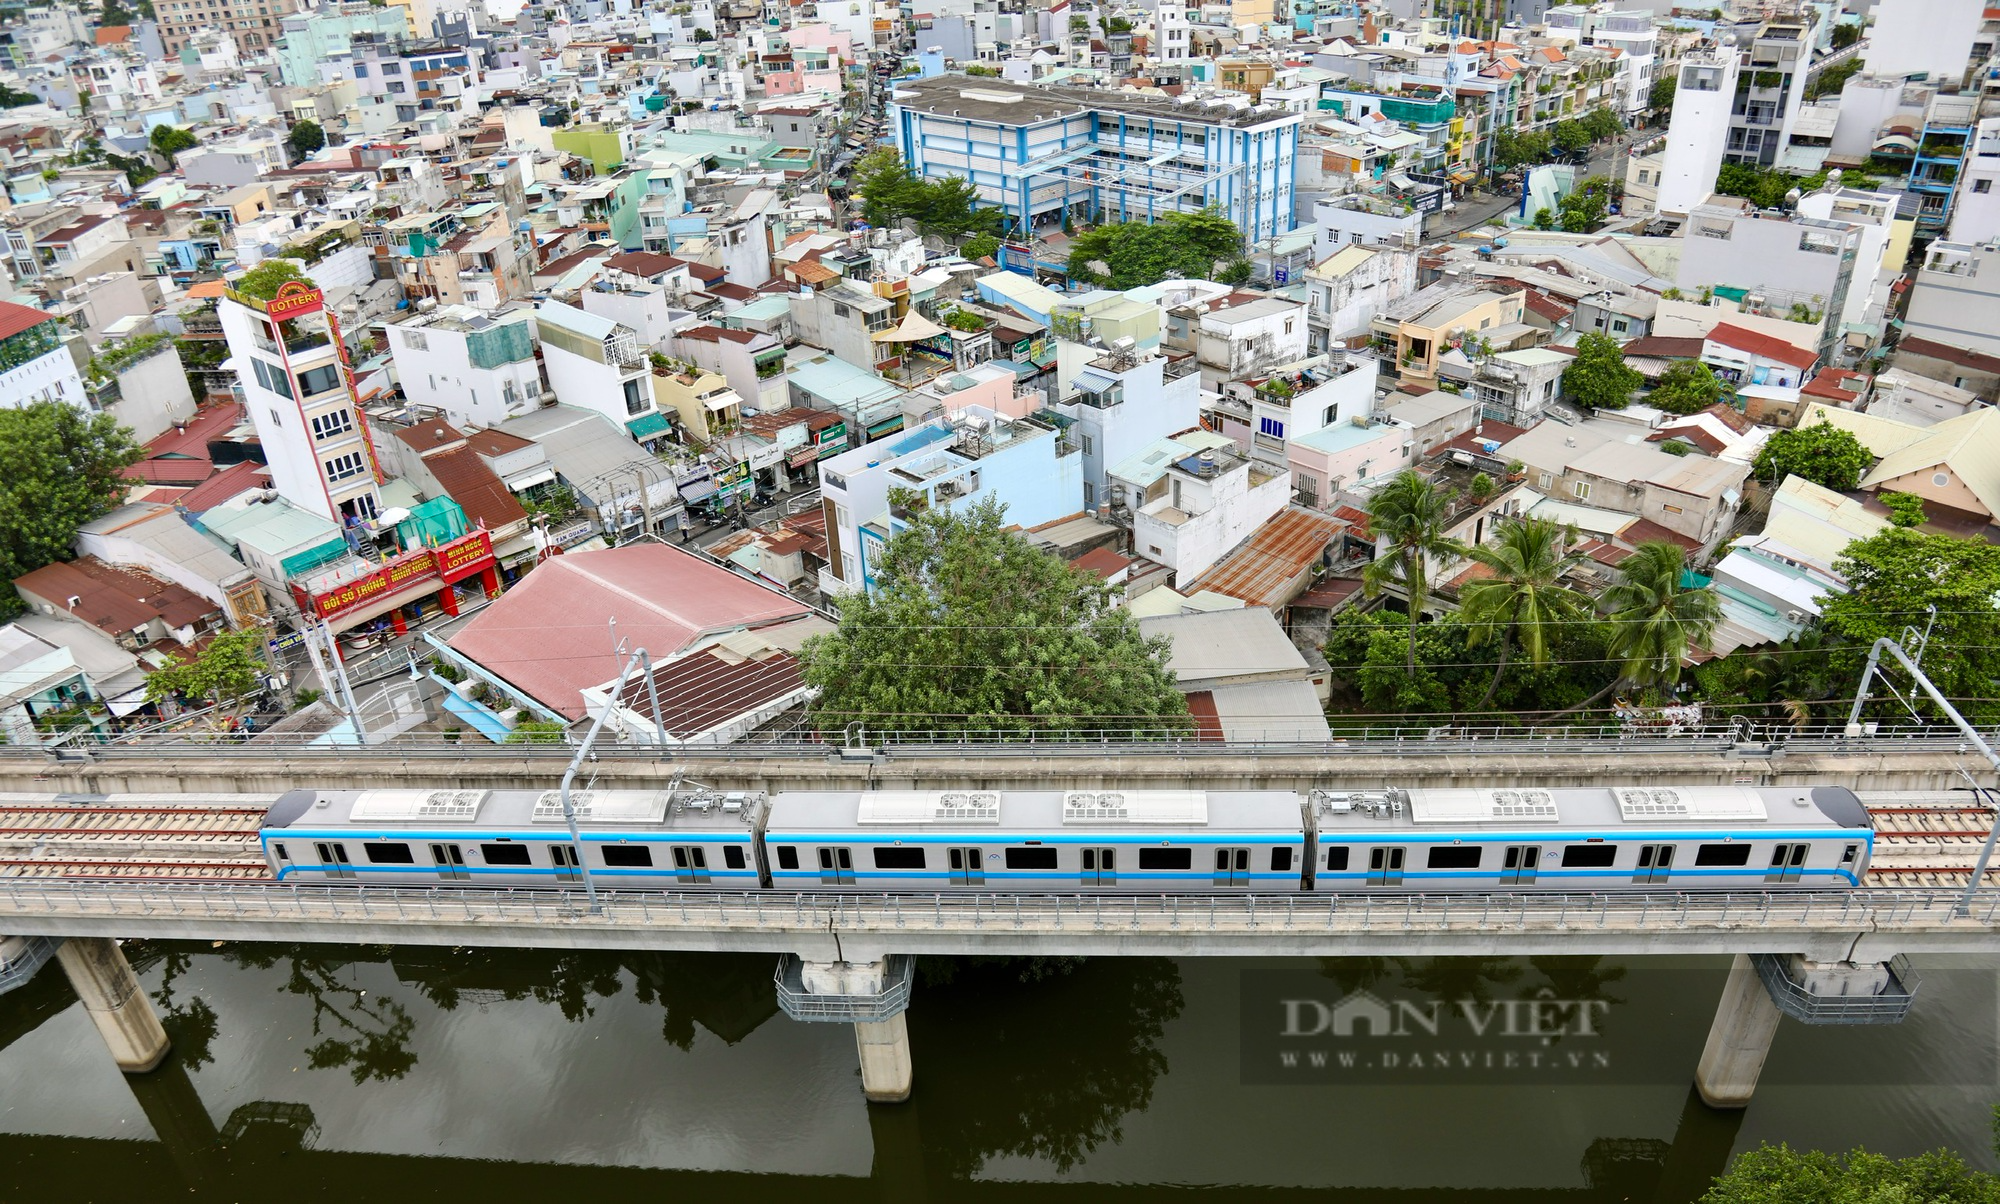 Chiêm ngưỡng đoàn tàu Metro Bến Thành - Suối Tiên chạy thử nghiệm toàn tuyến - Ảnh 11.